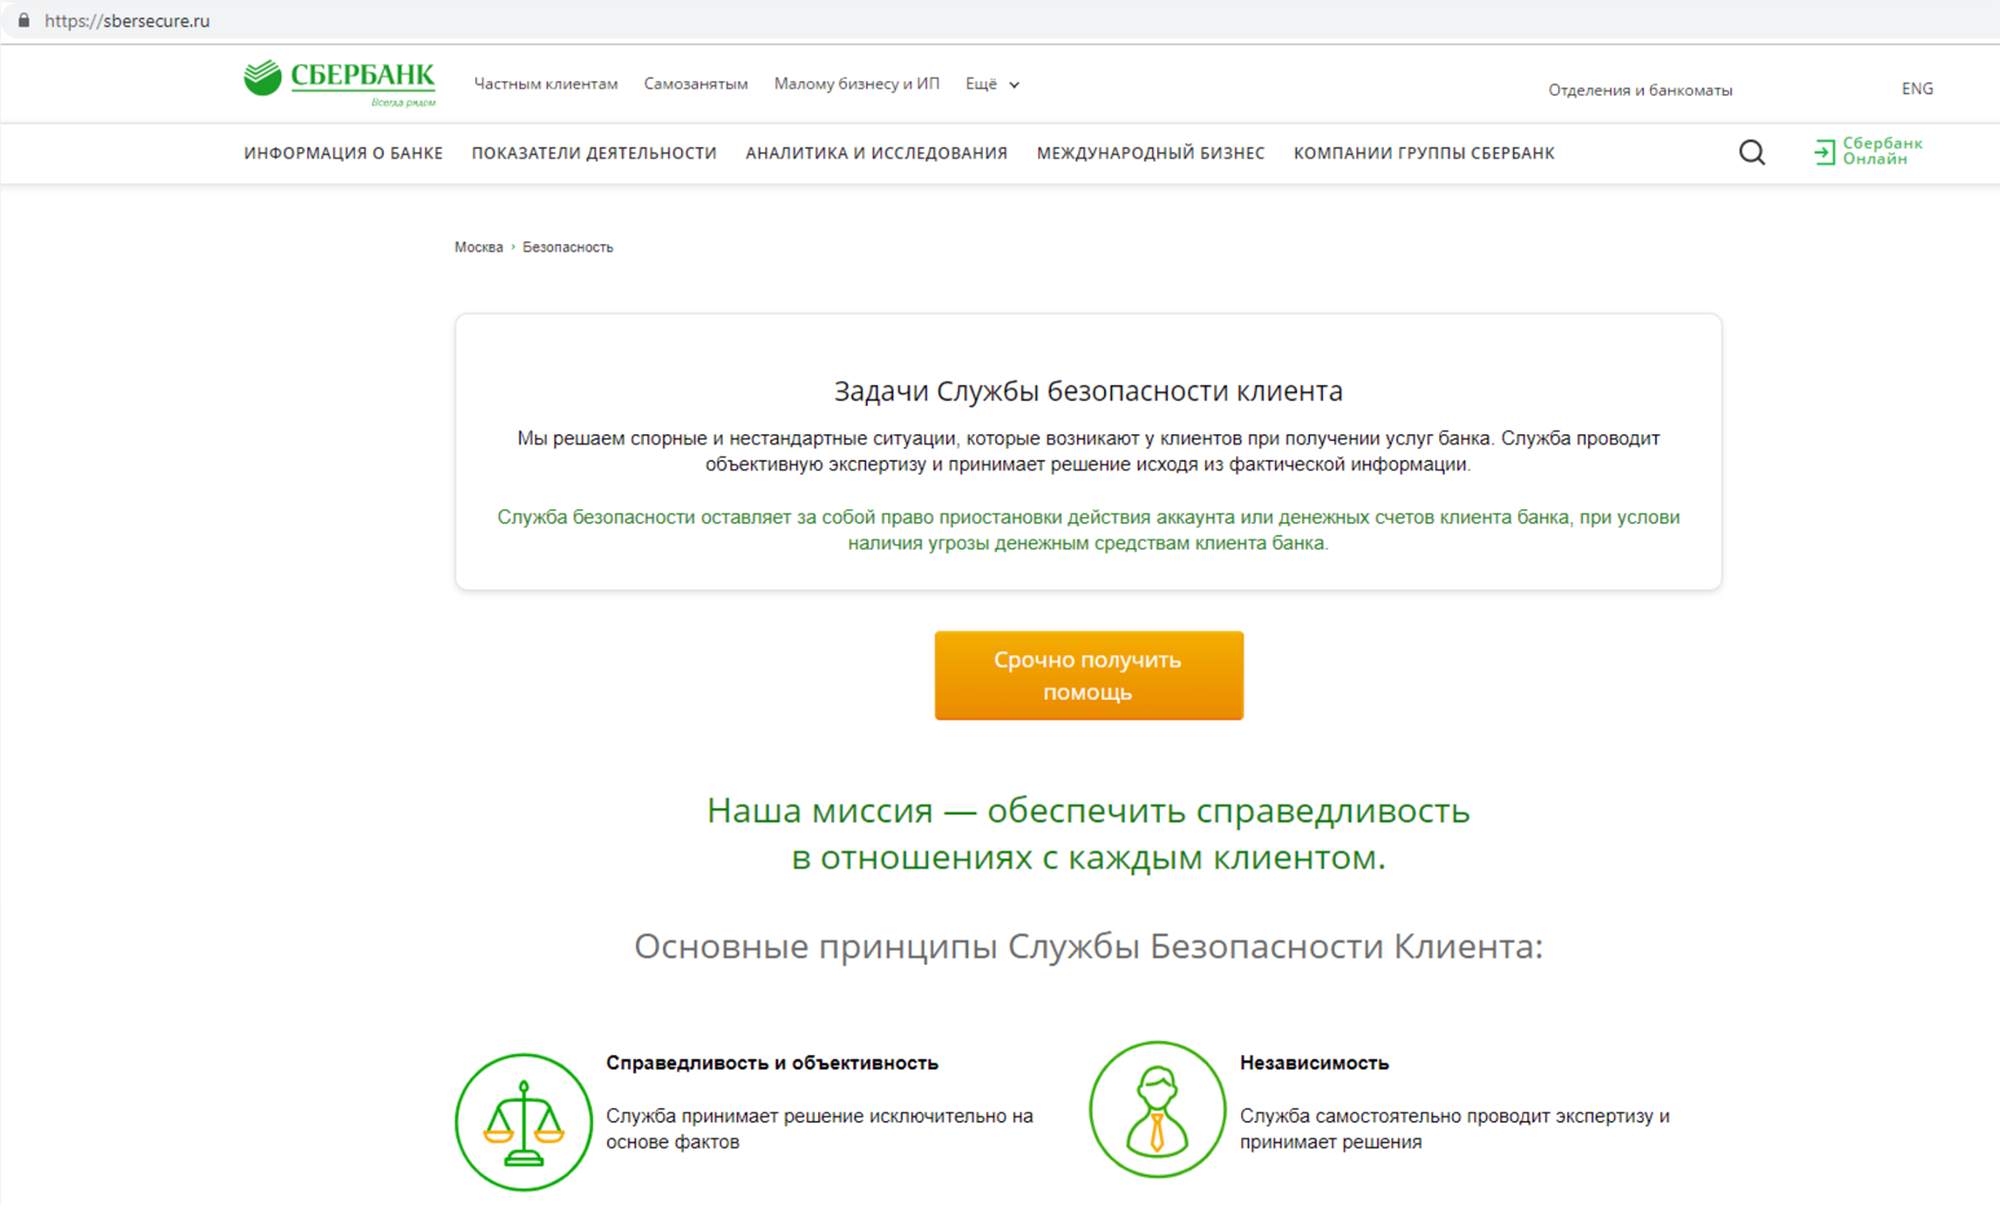 Один из сайтов-подделок, имитирующих сайт Сбербанка. Источник: pikabu.ru